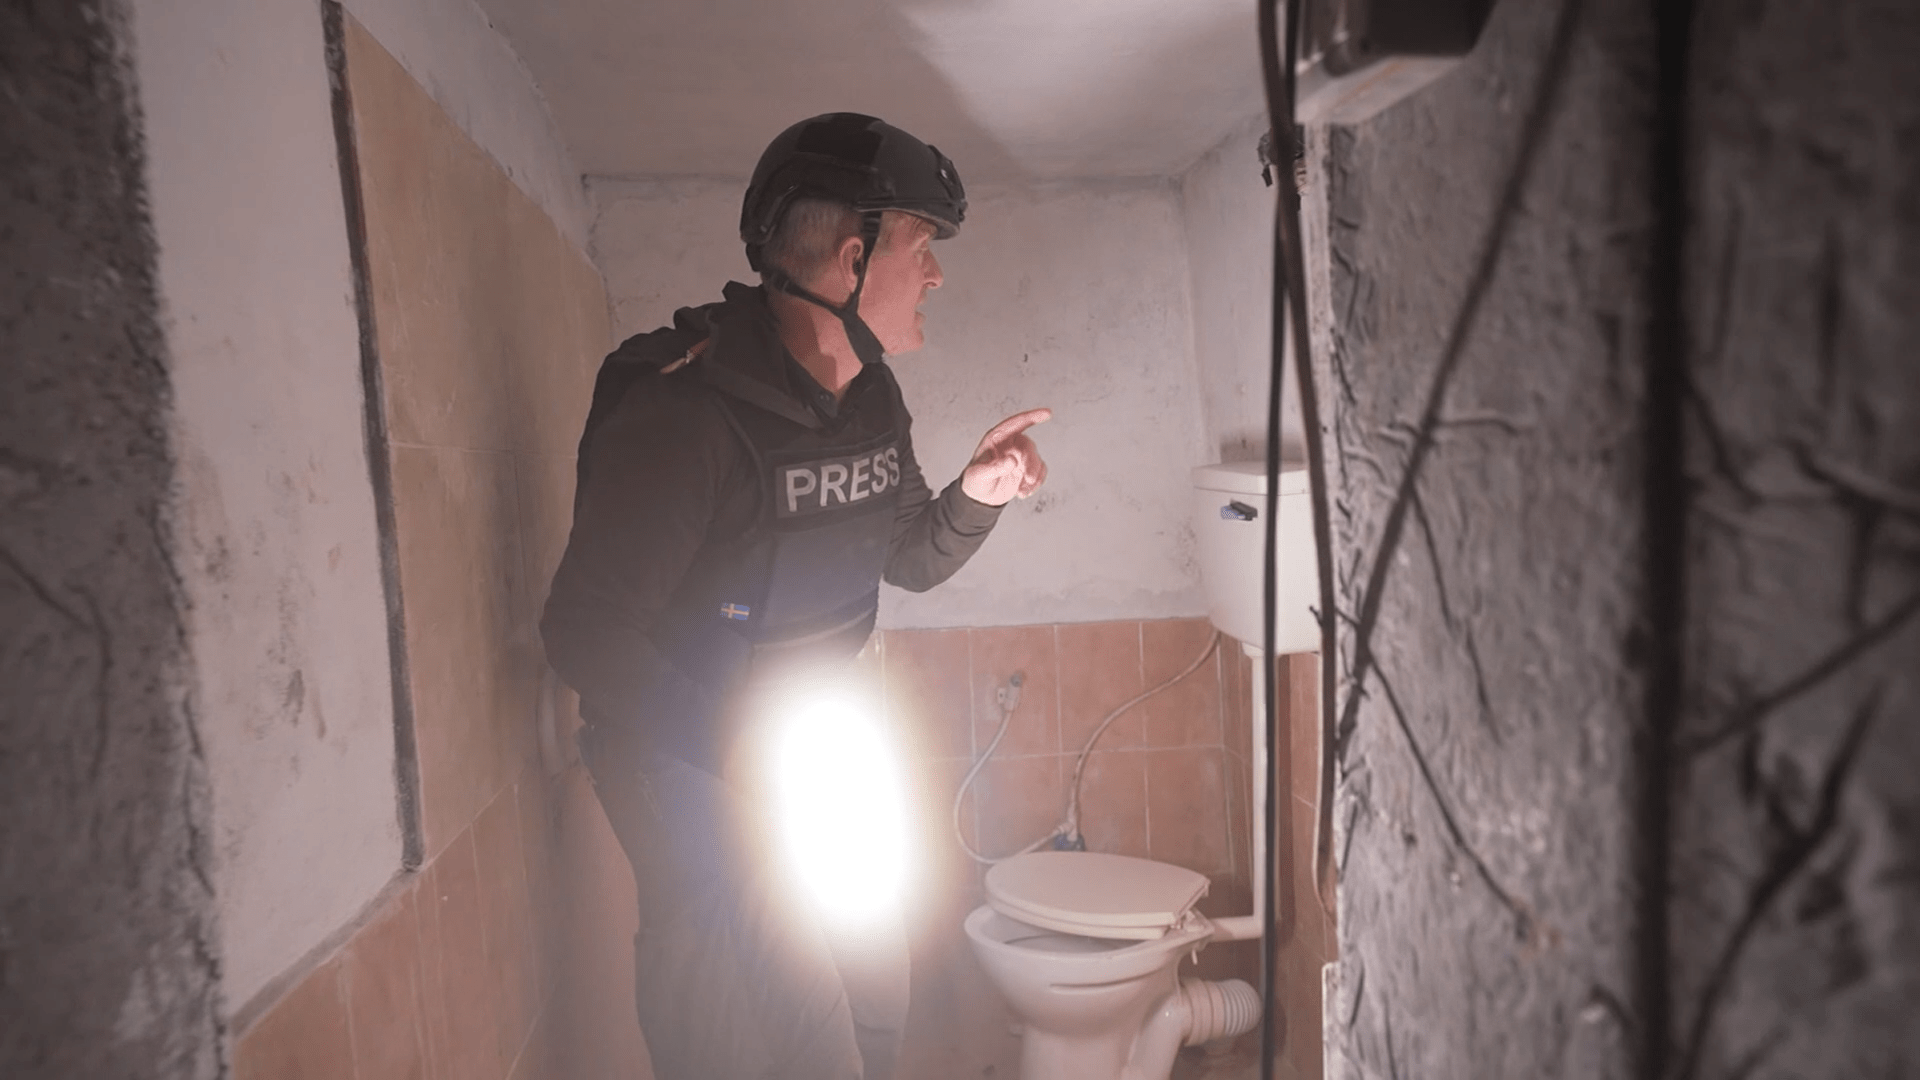 Štáb CNN v tunelech pod Gazou objevil i splachovací záchod.